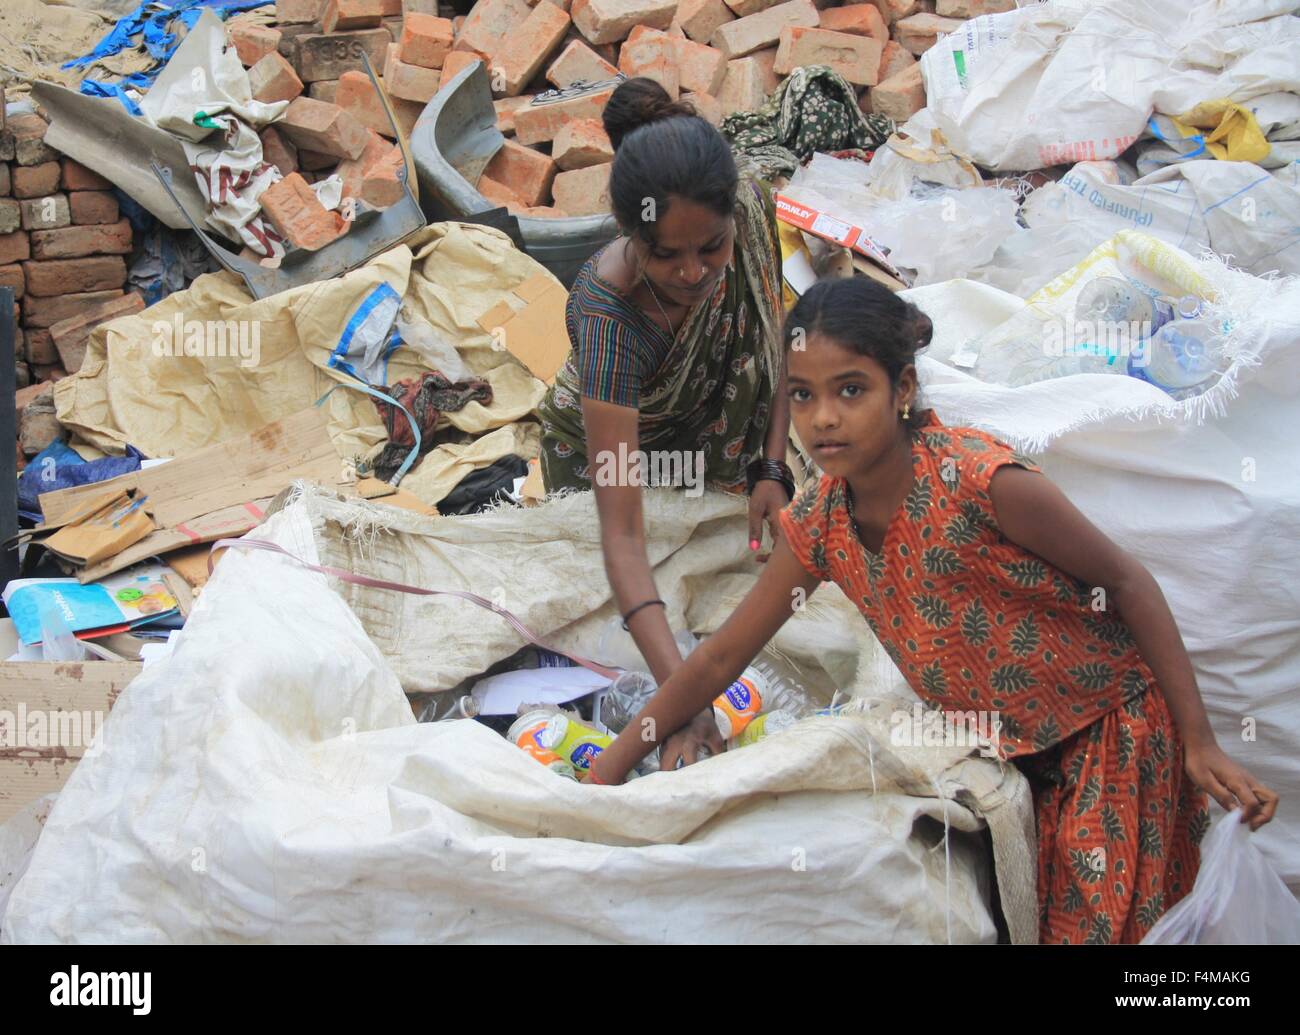 Chennai, Indien. 24. Sep, 2015. Slum-Bewohner zu sammeln und ordnen Müll in Chennai, Indien, 24. September 2015. Foto: Friederike Heine/Dpa/Alamy Live News Stockfoto